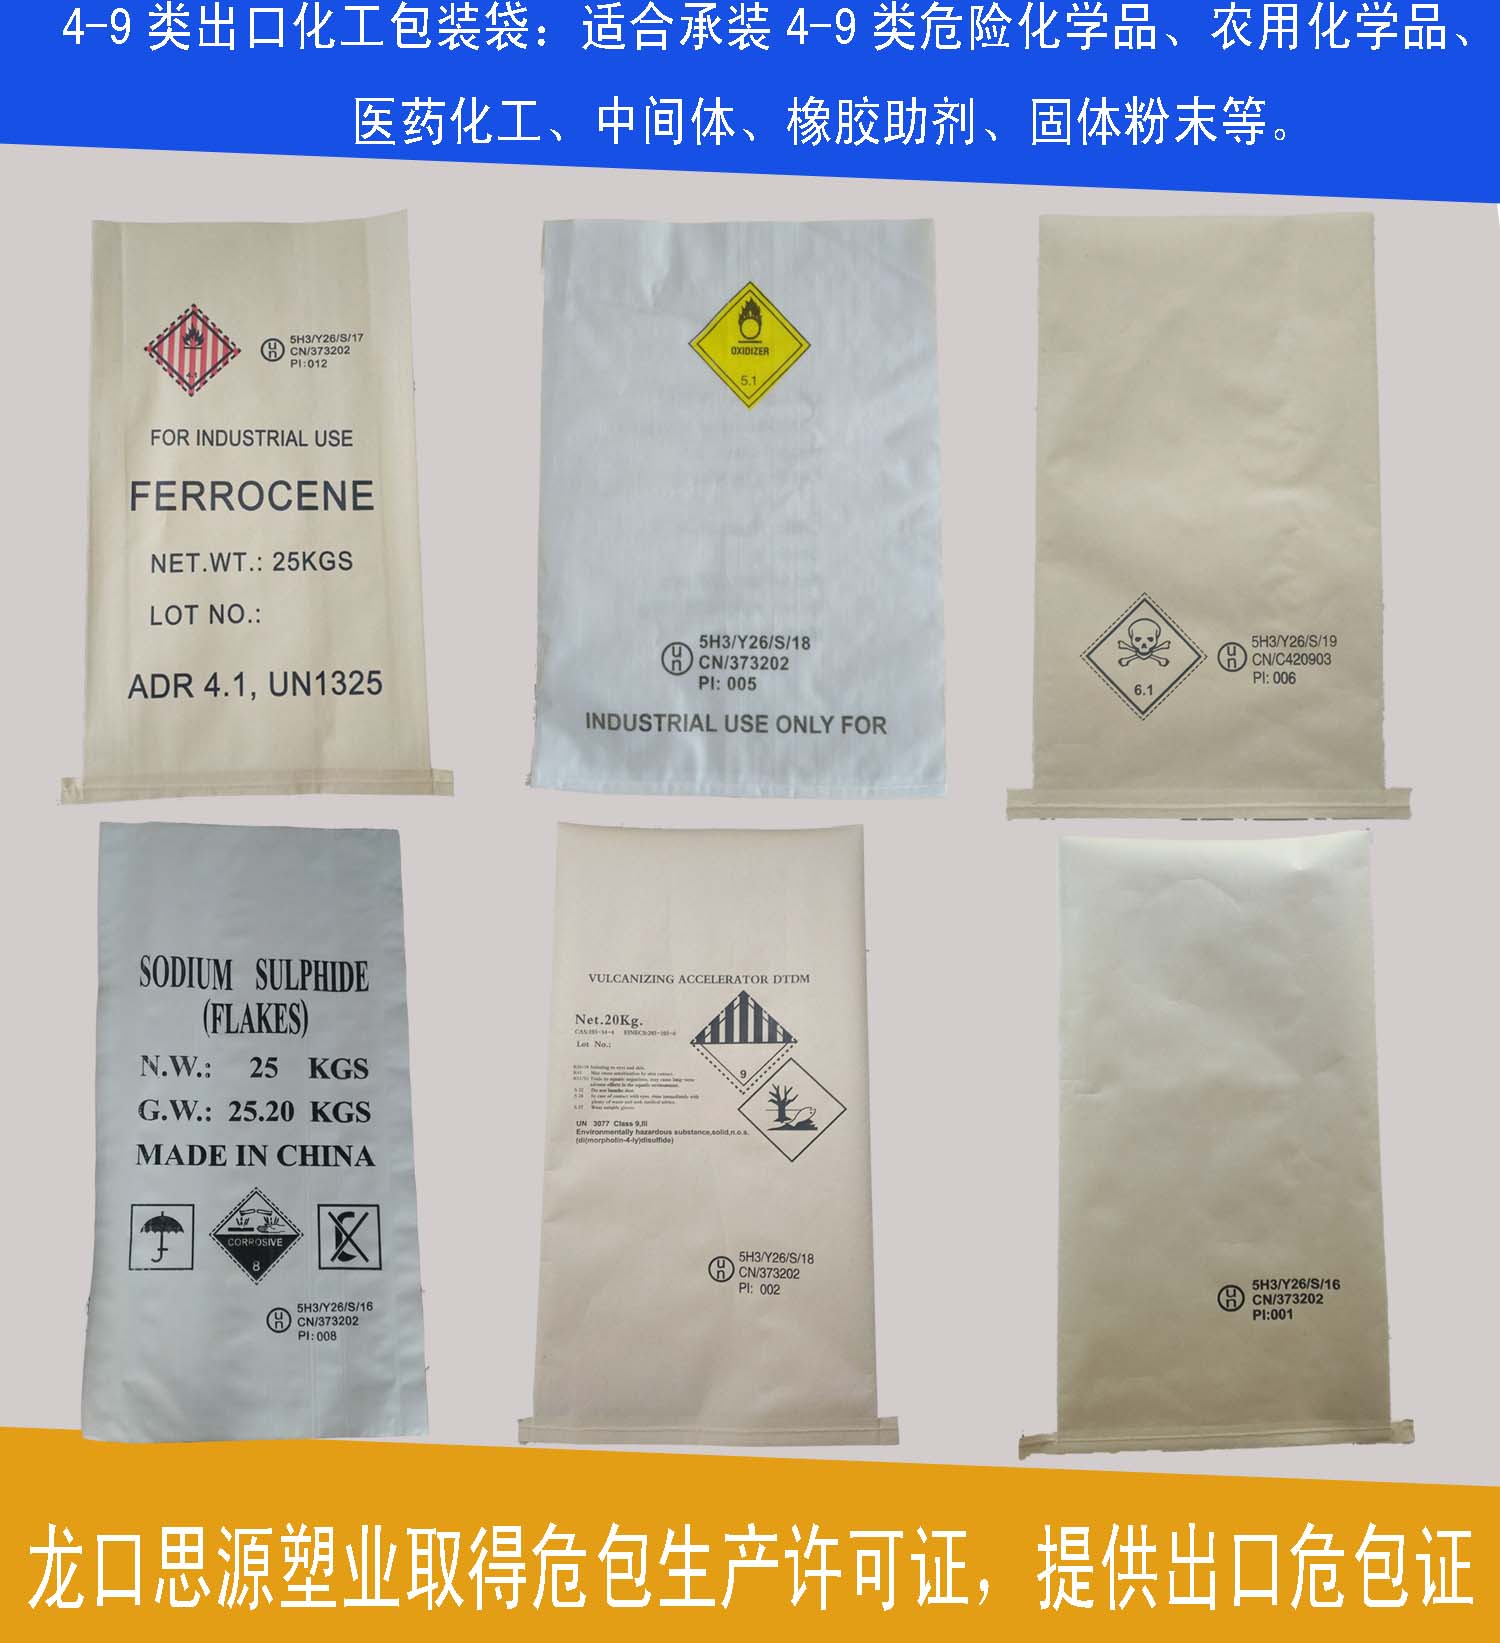 二类危险品包装袋—提供危包出口商检性能单证